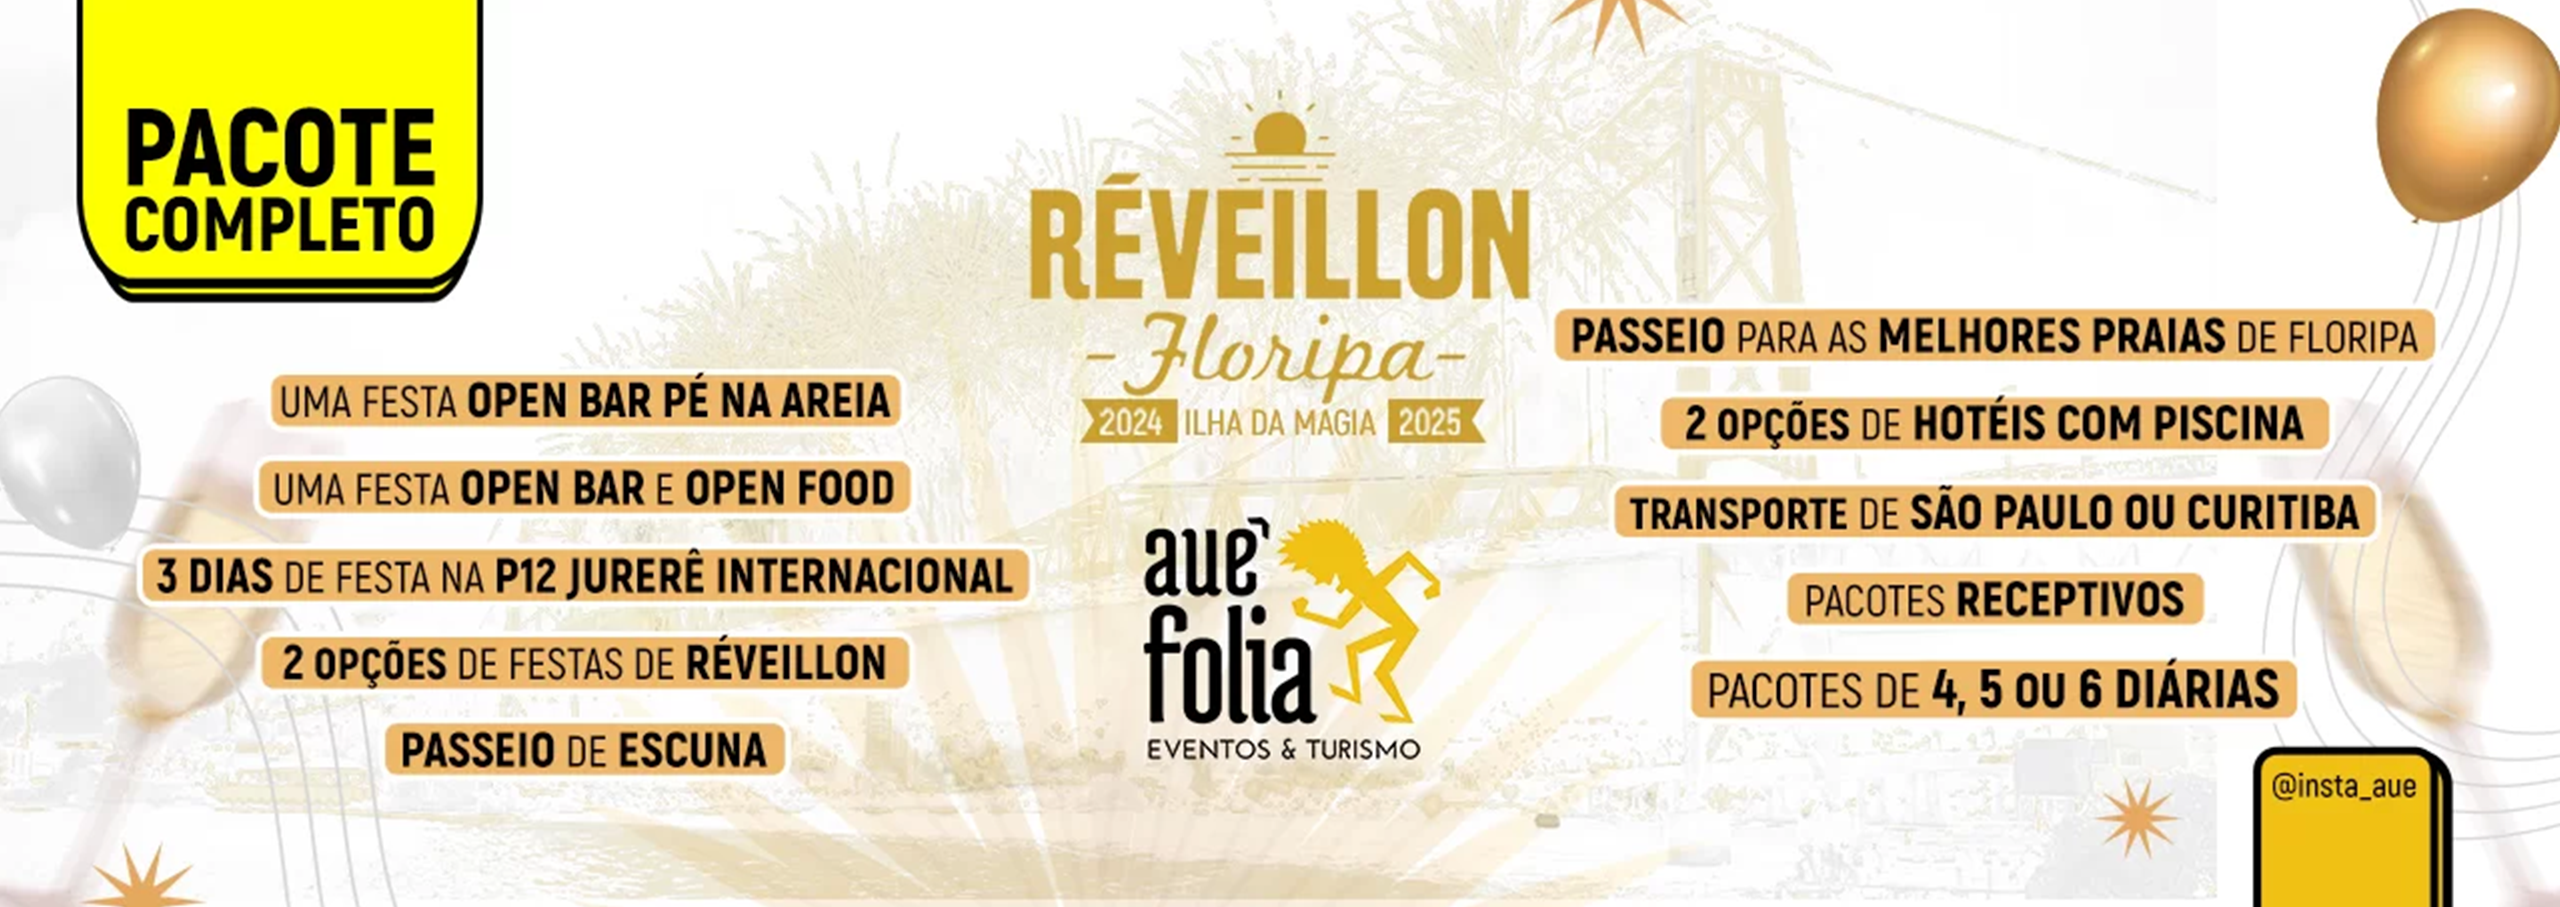 reveillon-florianopolis-hospedagem-hotel-festa-banner